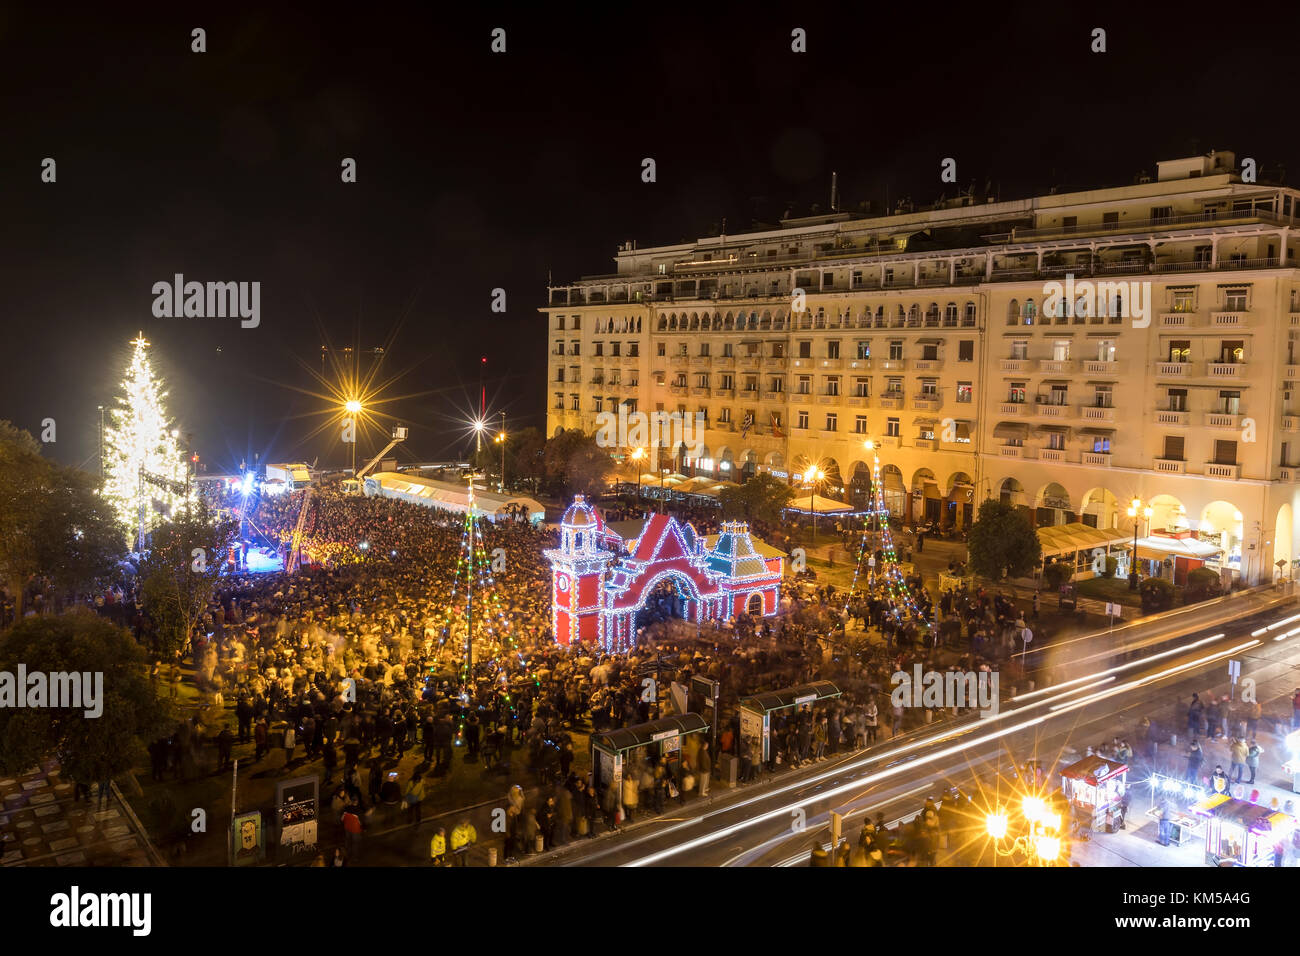 Thessalonique, Grèce - 30 novembre 2017 : foule de personnes dans la place d'Aristote de Thessalonique voit l'arbre de Noël au cours de la période de Noël. Banque D'Images